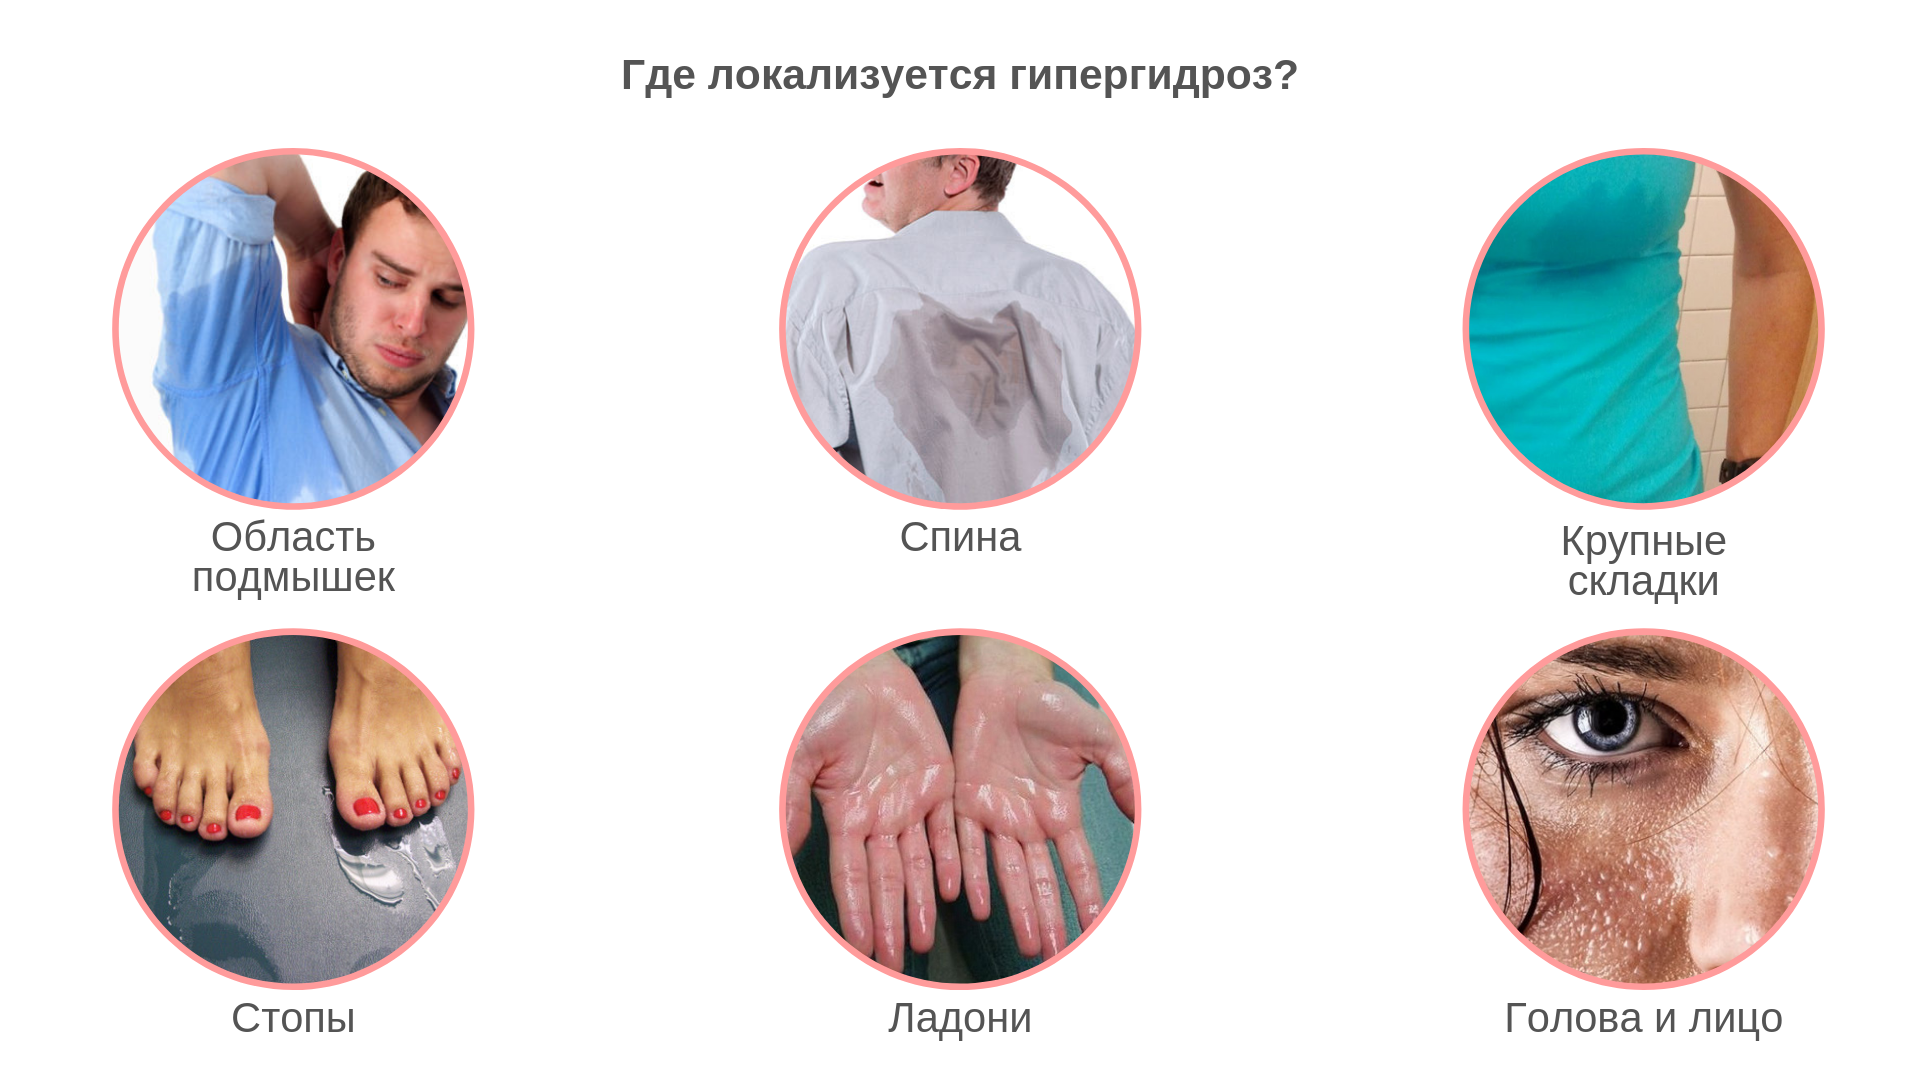 Лечение гипергидроза 【потливости】 подмышек и ладоней Диспортом в Минске